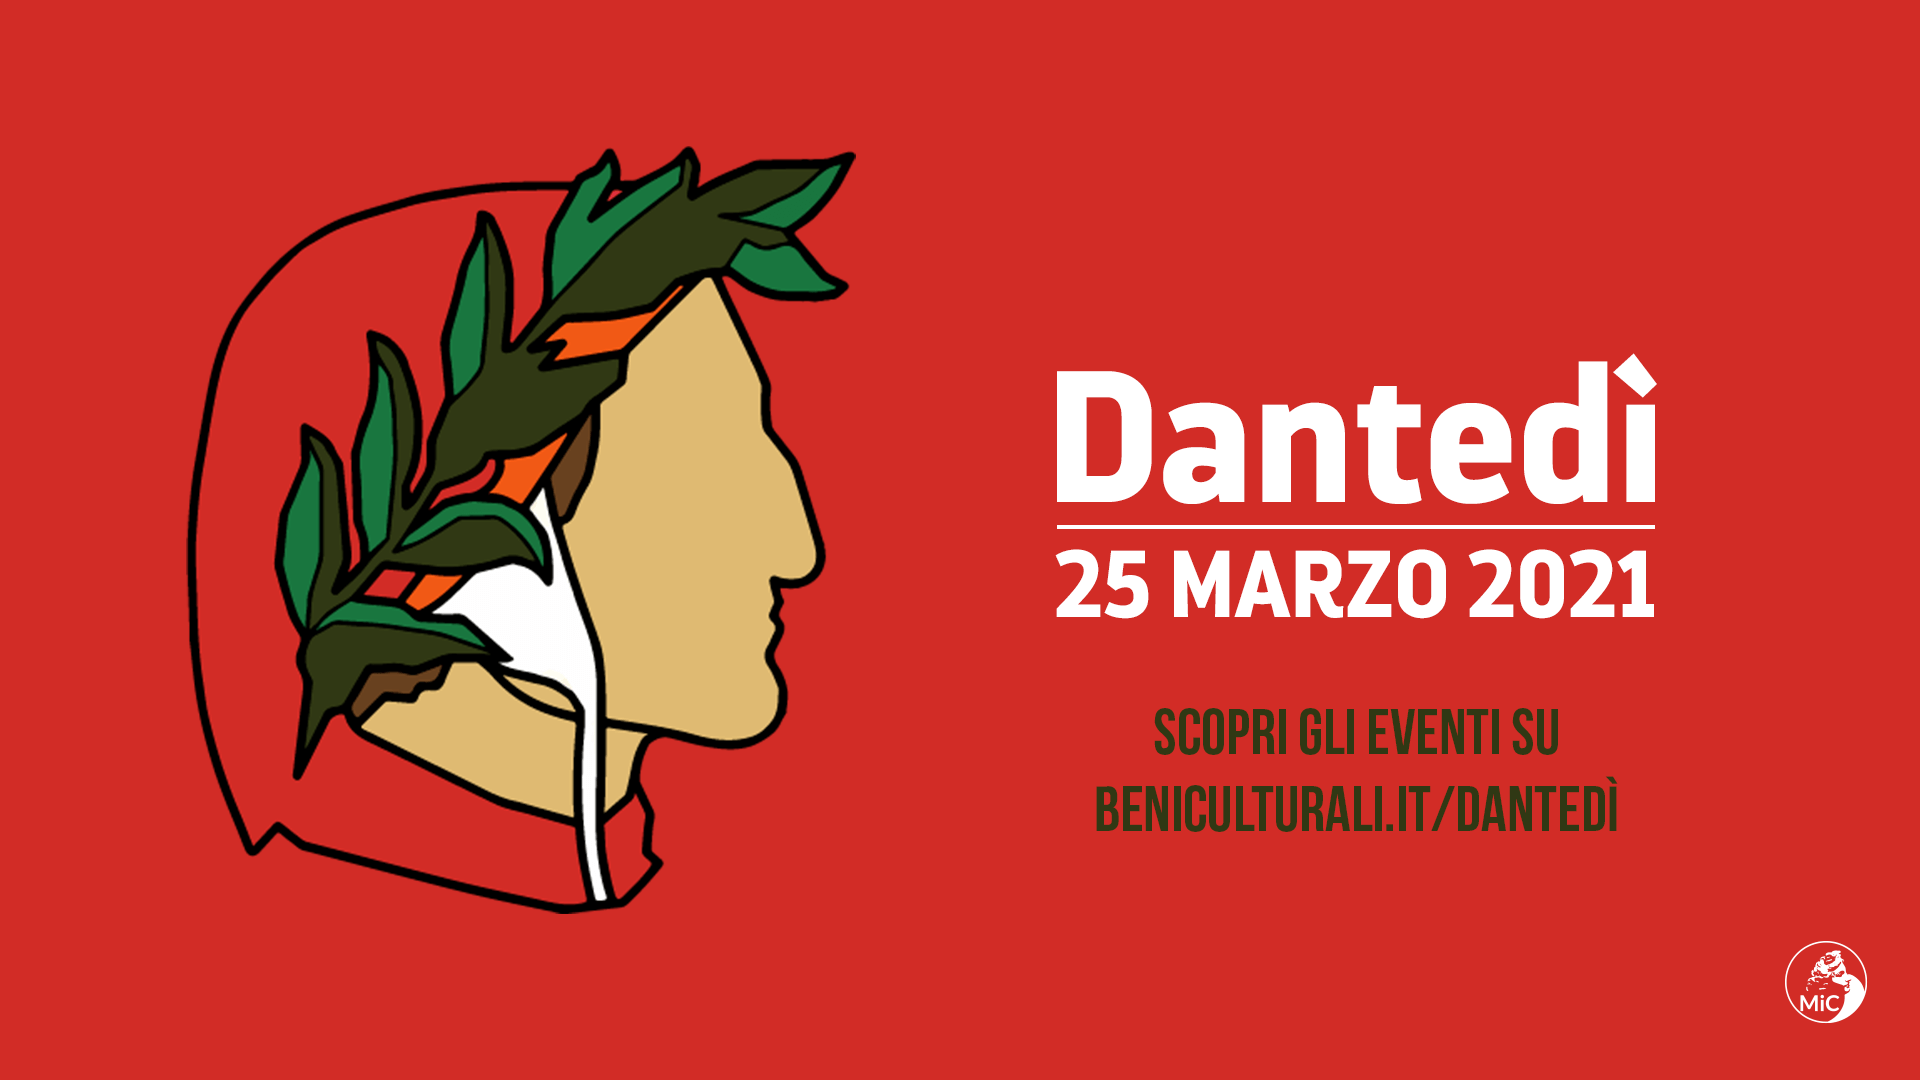 Dante Alighieri - card Dantedì 2021